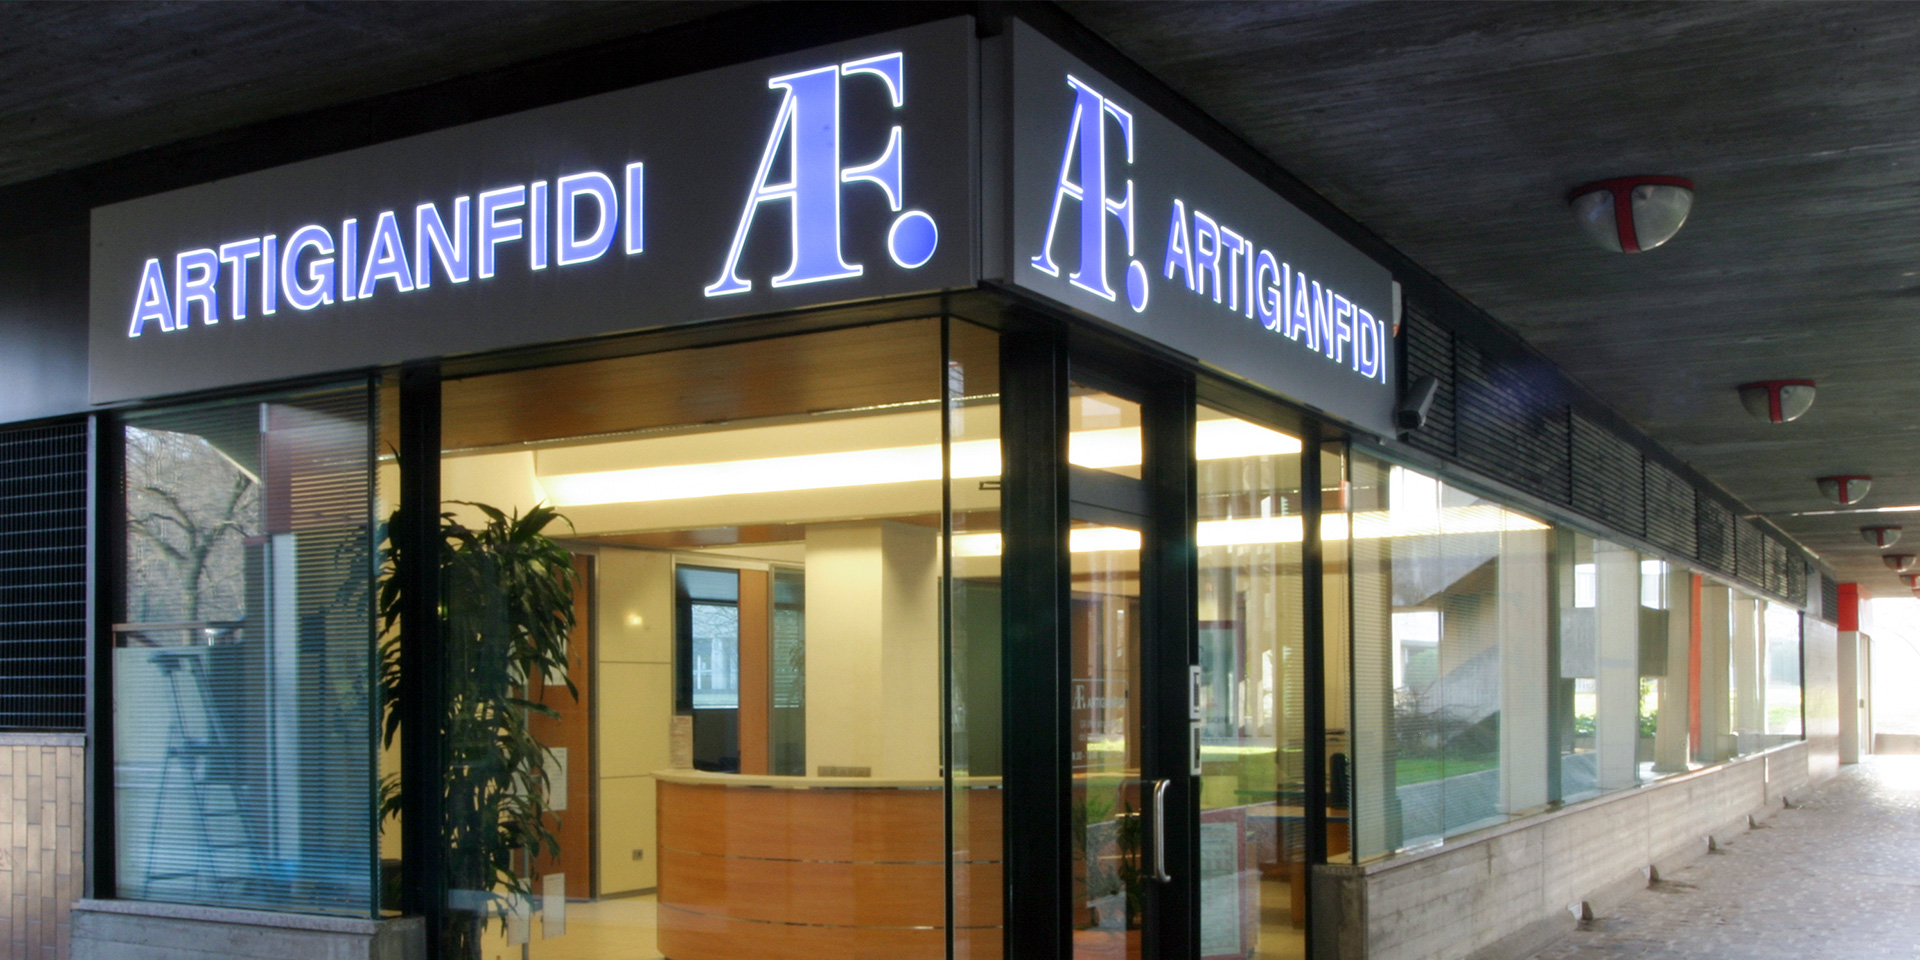 Artigianfidi, Binini Partners, Società di architettura e ingegneria, Reggio Emilia, Italia